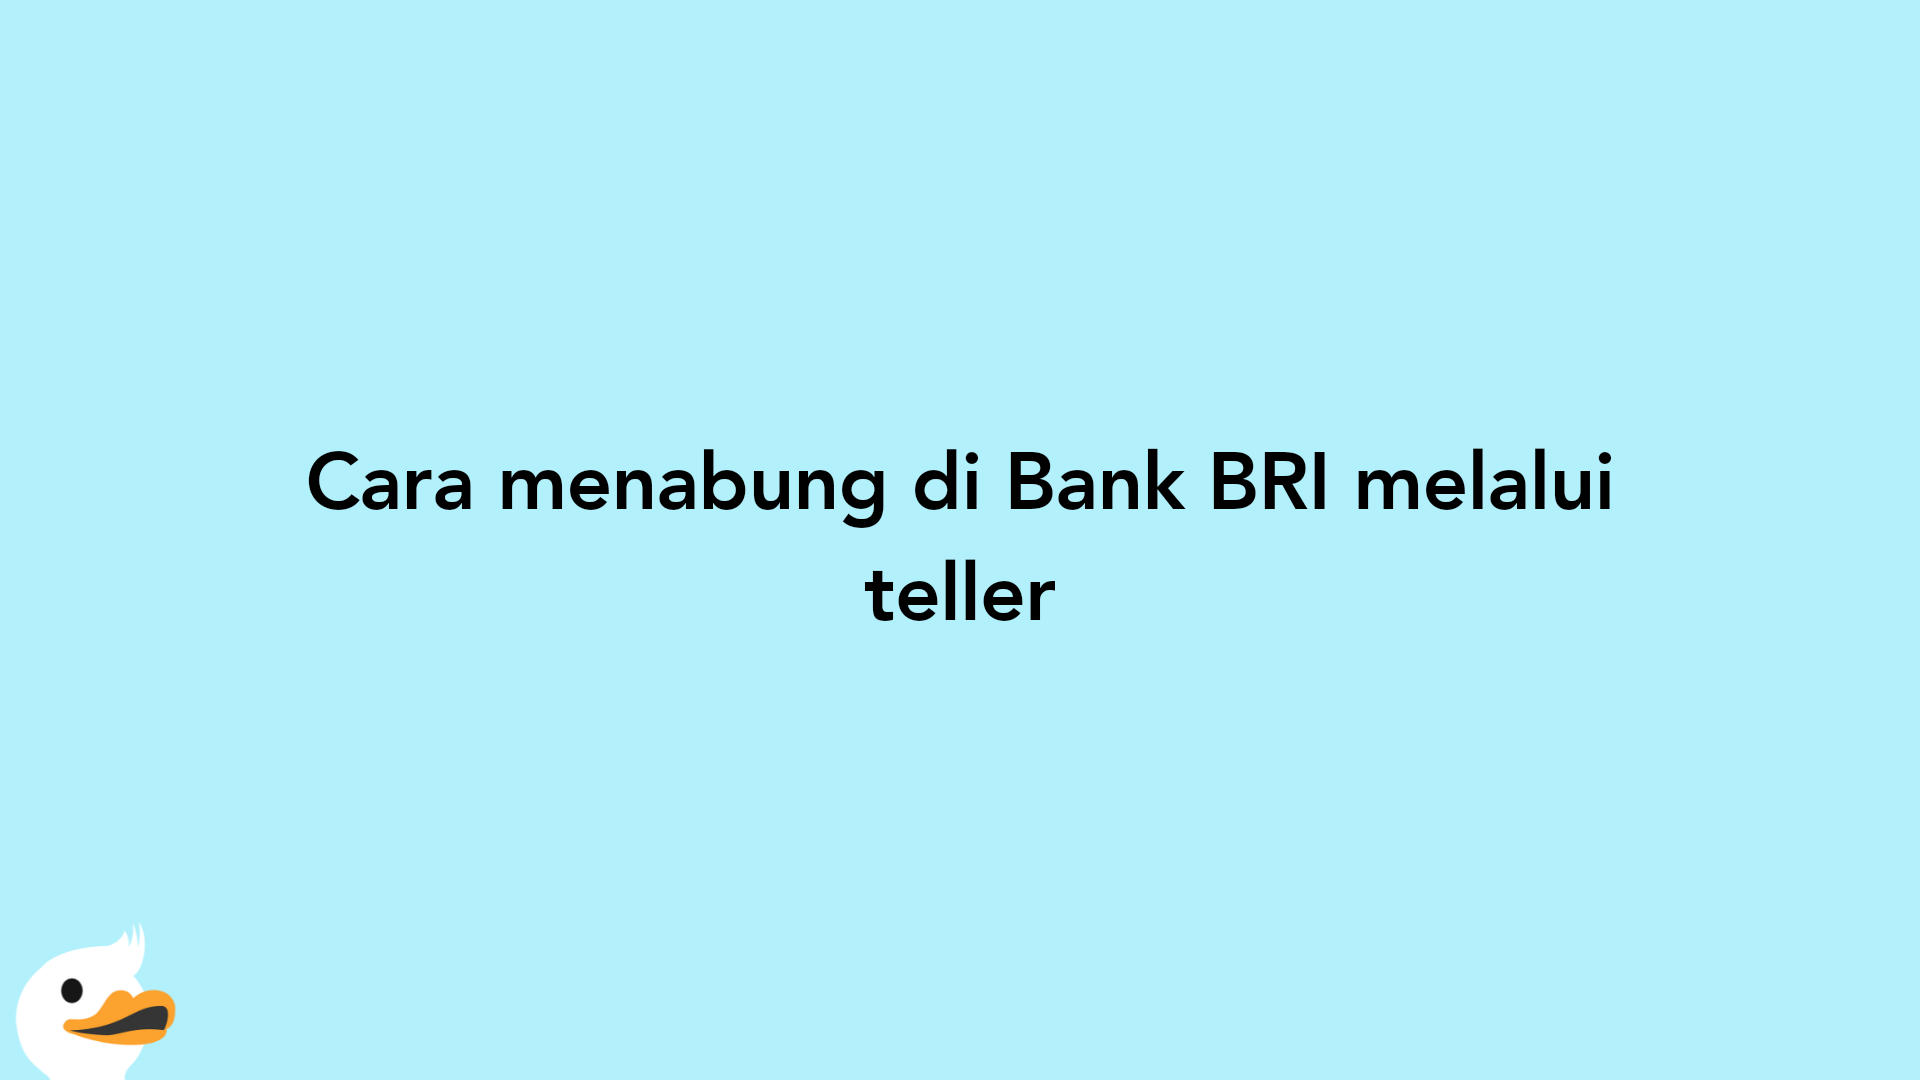 Cara menabung di Bank BRI melalui teller